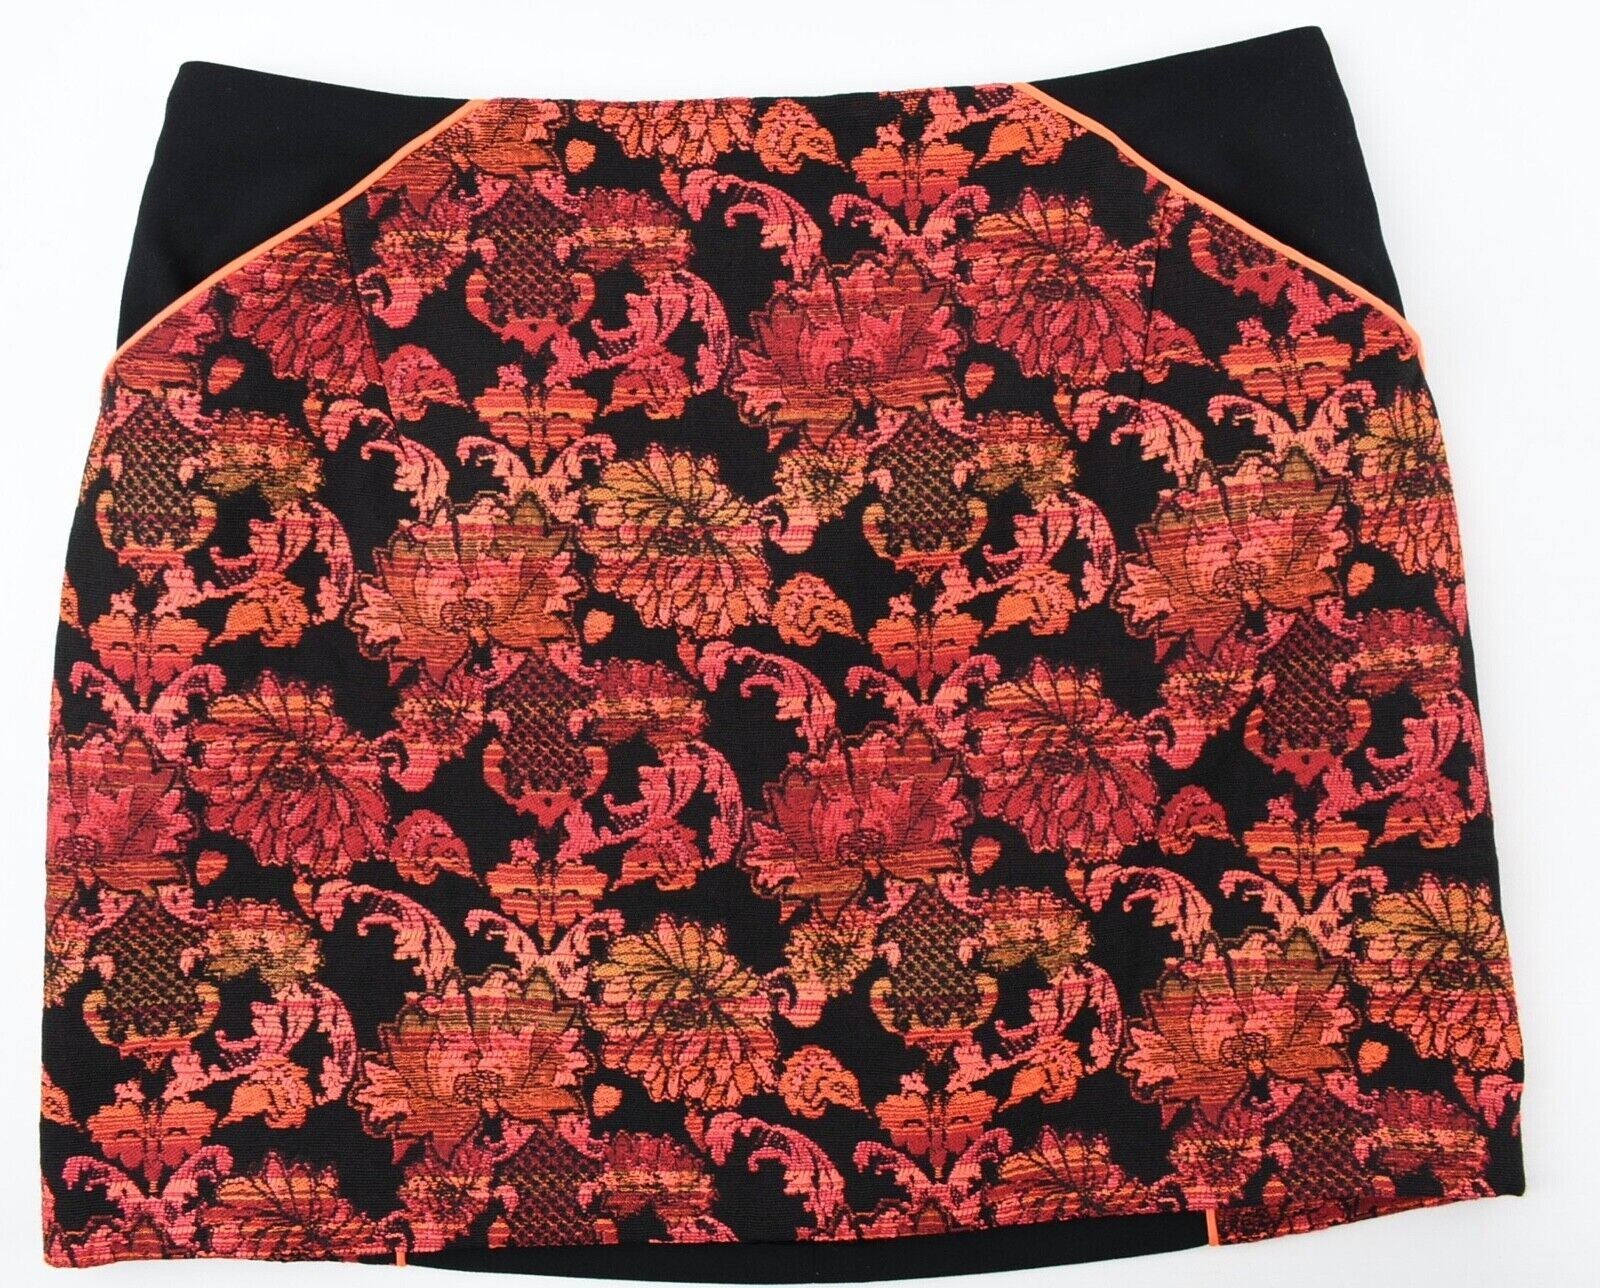 TED BAKER Women's Black/Red Jacquard Mini Skirt, Ted size 2 / UK 10